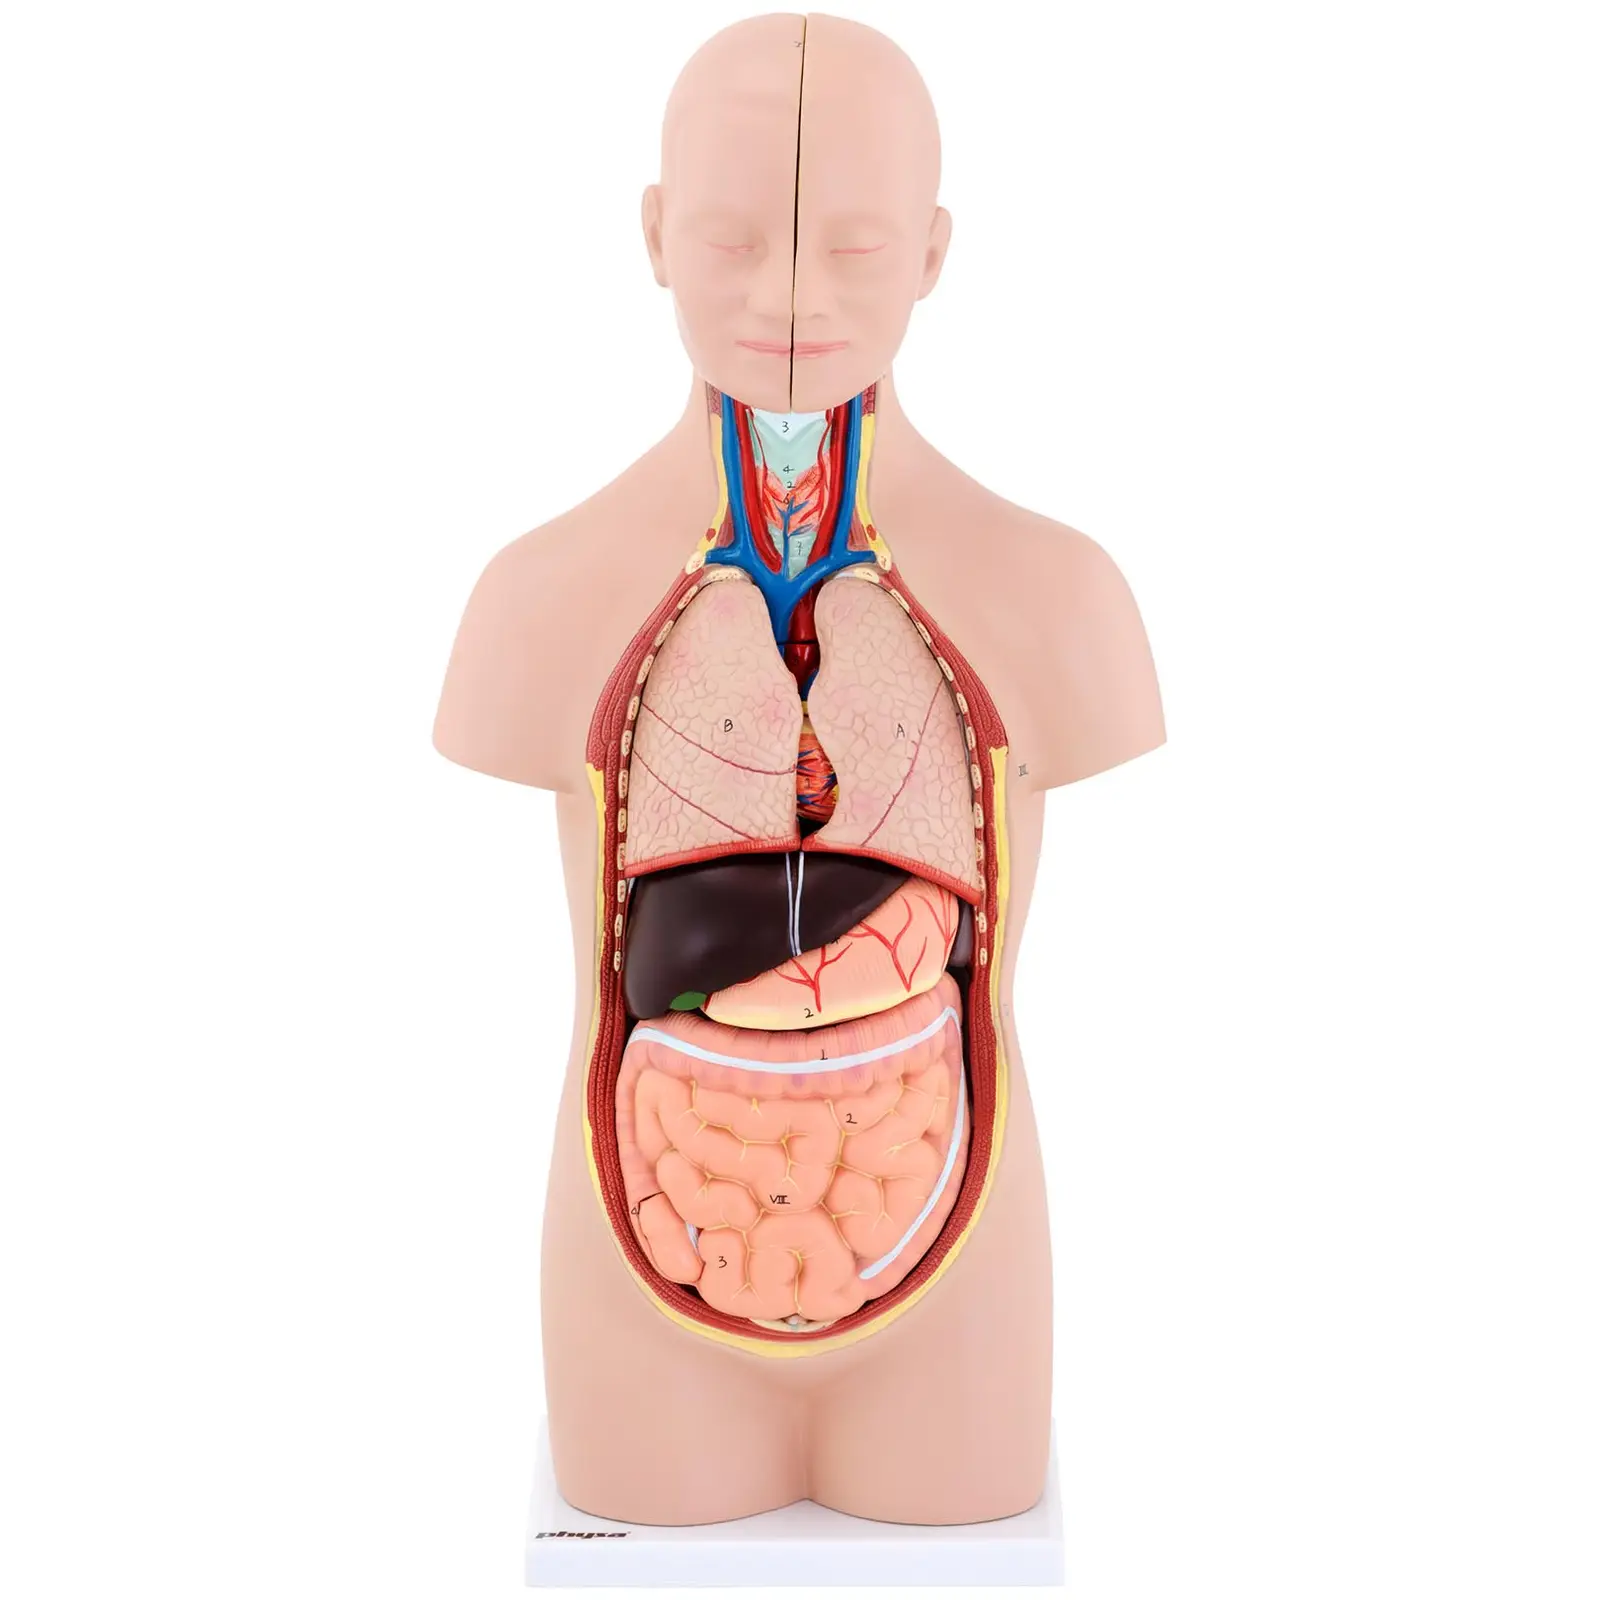 Maquette anatomique du torse humain asexué - En 12 parties - Hauteur 48 cm